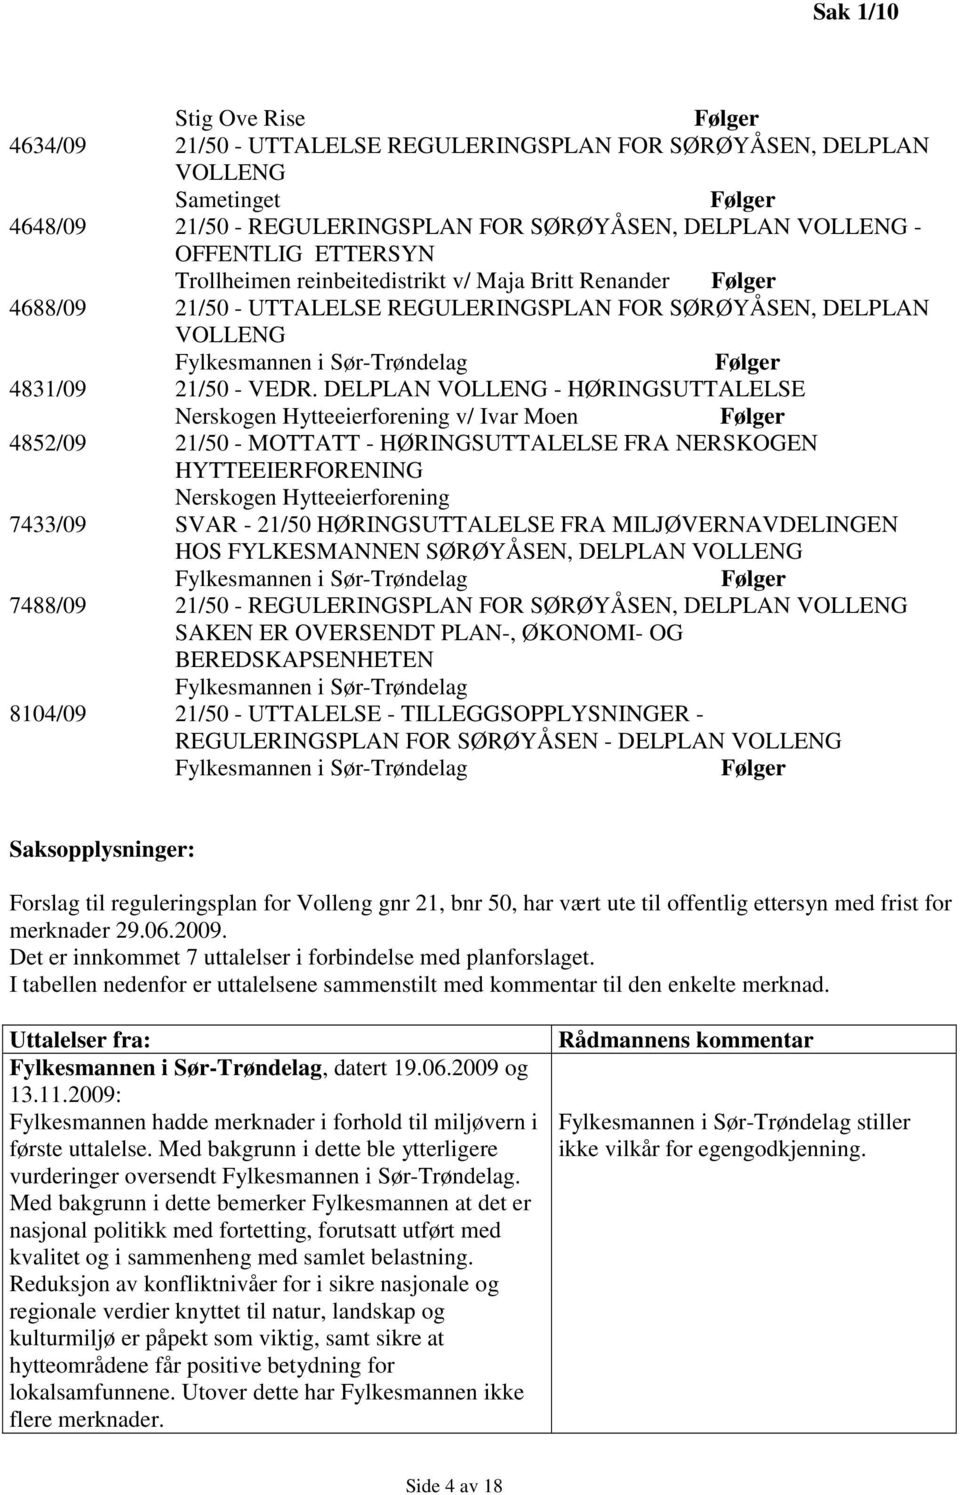 DELPLAN VOLLENG - HØRINGSUTTALELSE Nerskogen Hytteeierforening v/ Ivar Moen Følger 4852/09 21/50 - MOTTATT - HØRINGSUTTALELSE FRA NERSKOGEN HYTTEEIERFORENING Nerskogen Hytteeierforening 7433/09 SVAR